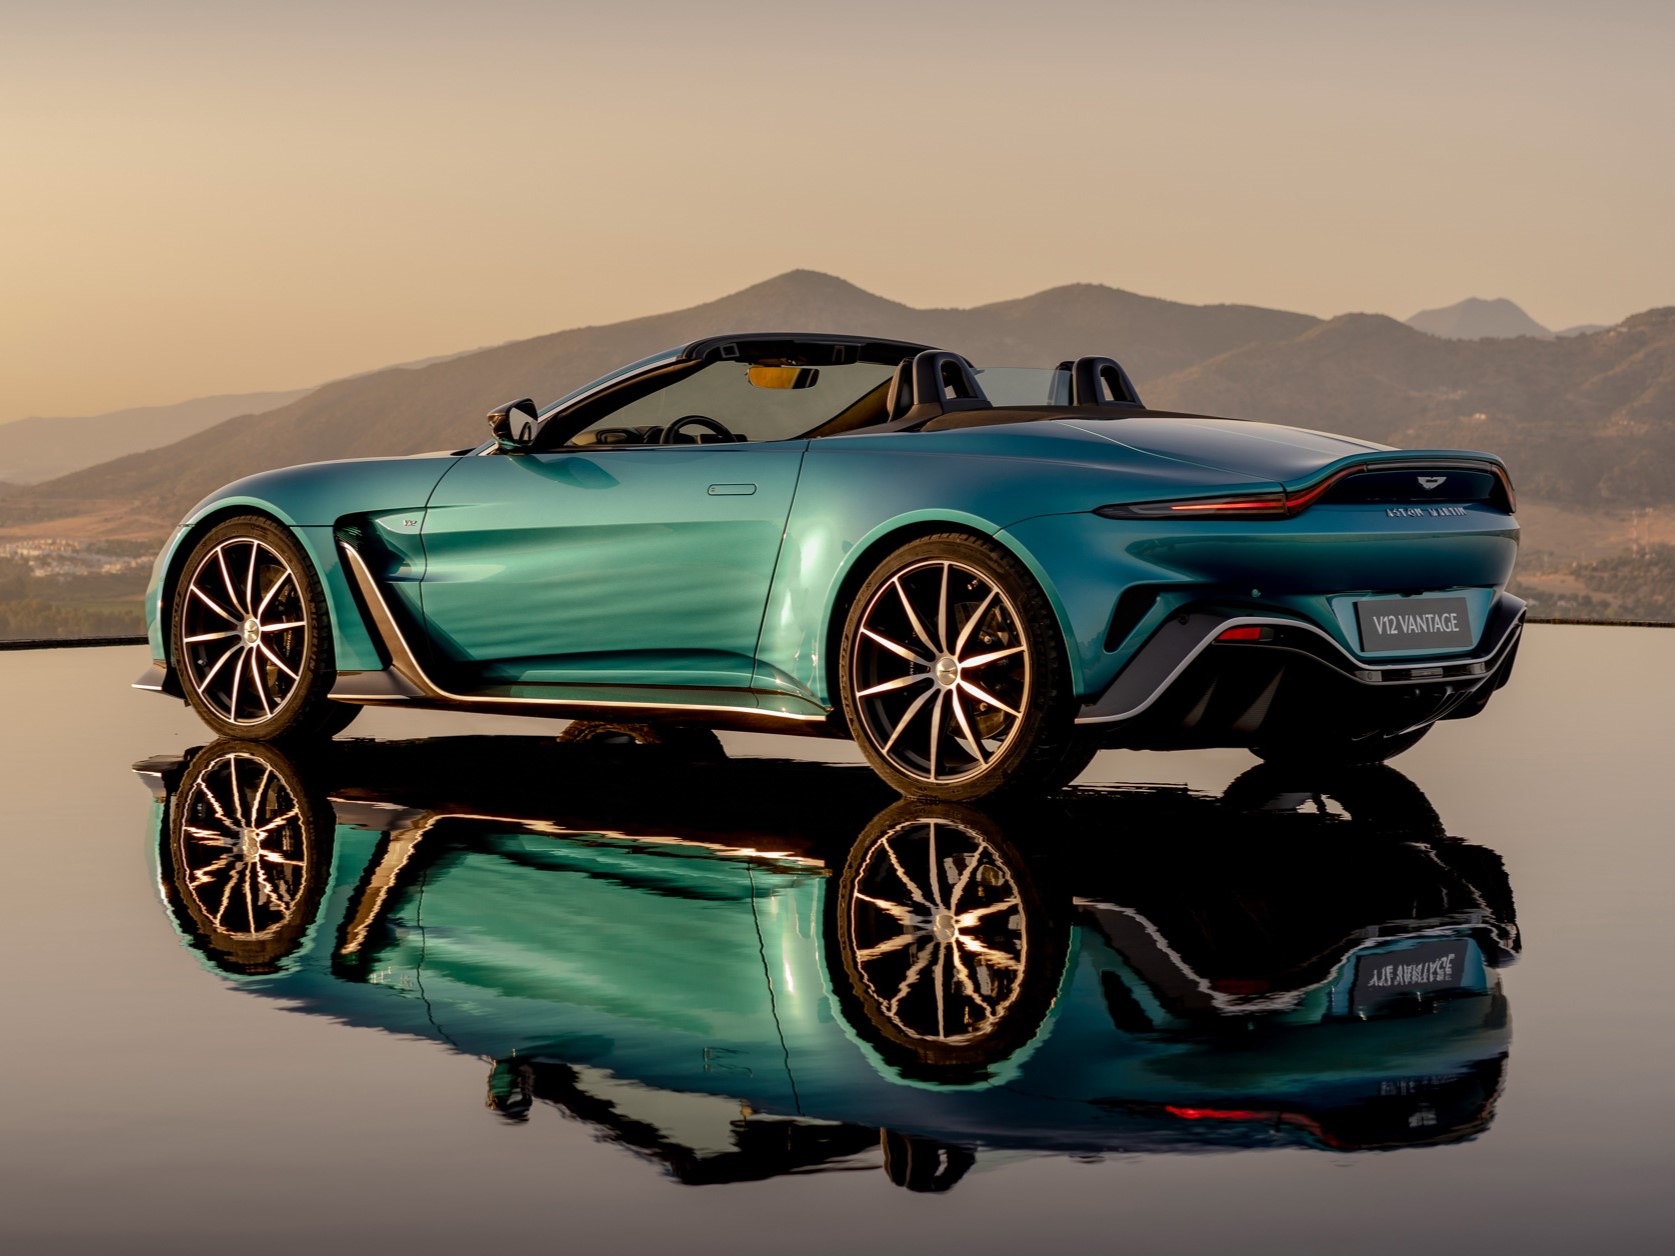 Skupina Geely Holding získala 7,6 % podiel v britskom výrobcovi luxusných automobilov Aston Martin, čím pomohla upevniť podiel čínskej spoločnosti v luxusných a európskych značkách.